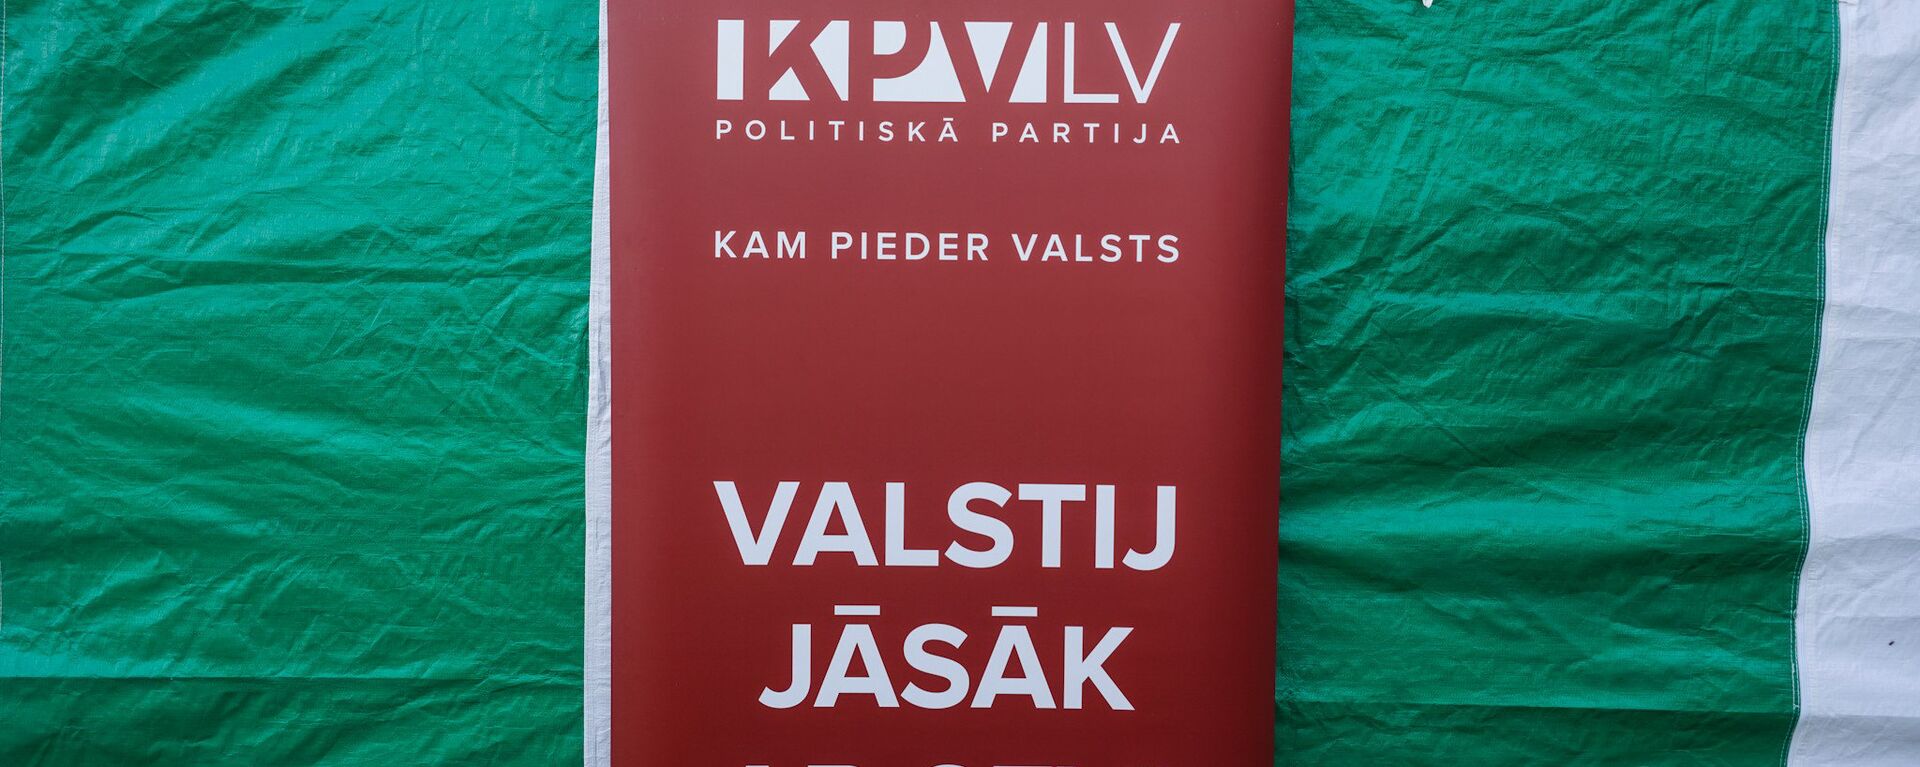 Политическая партия KPV LV - Sputnik Латвия, 1920, 07.02.2020